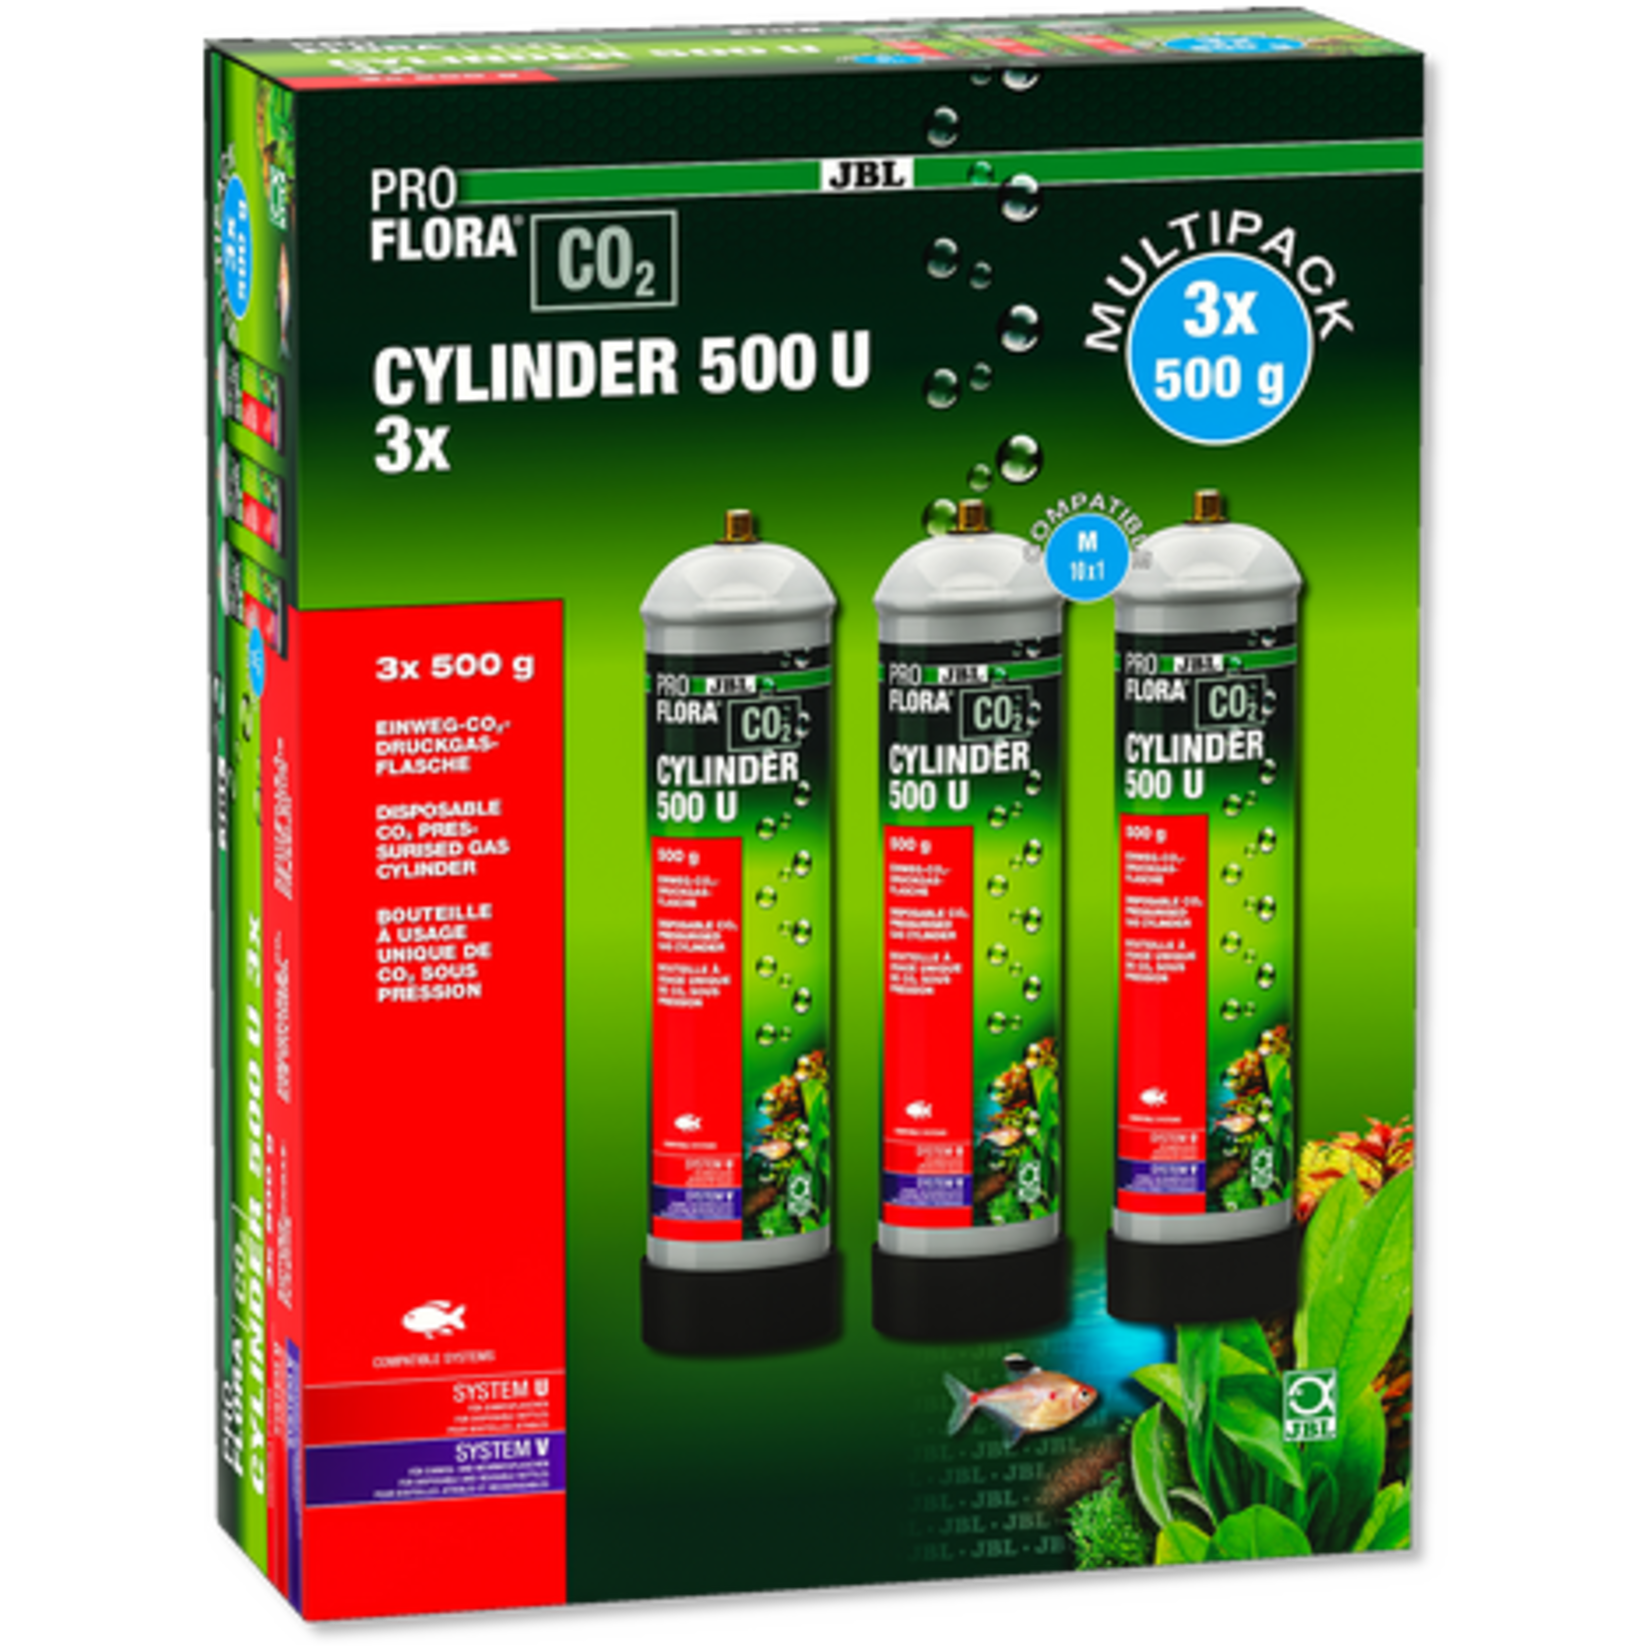 JBL JBL PROFLORA CO2 CYLINDER 500 U 3x